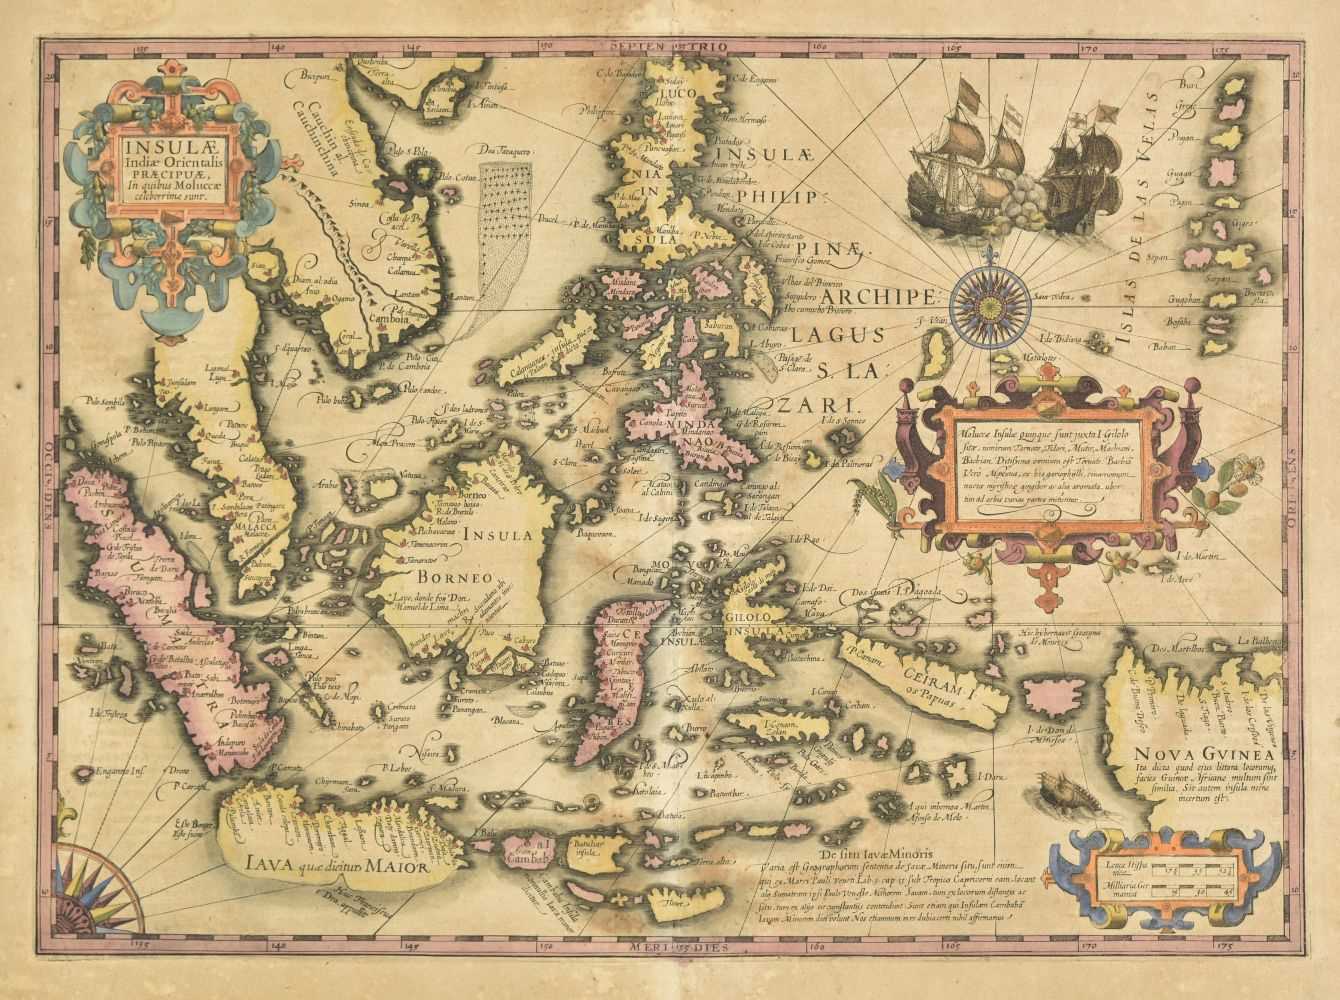 Lot 36 - East Indies. Hondius (Jodocus), Insulae Indiae Orientalis..., circa 1607